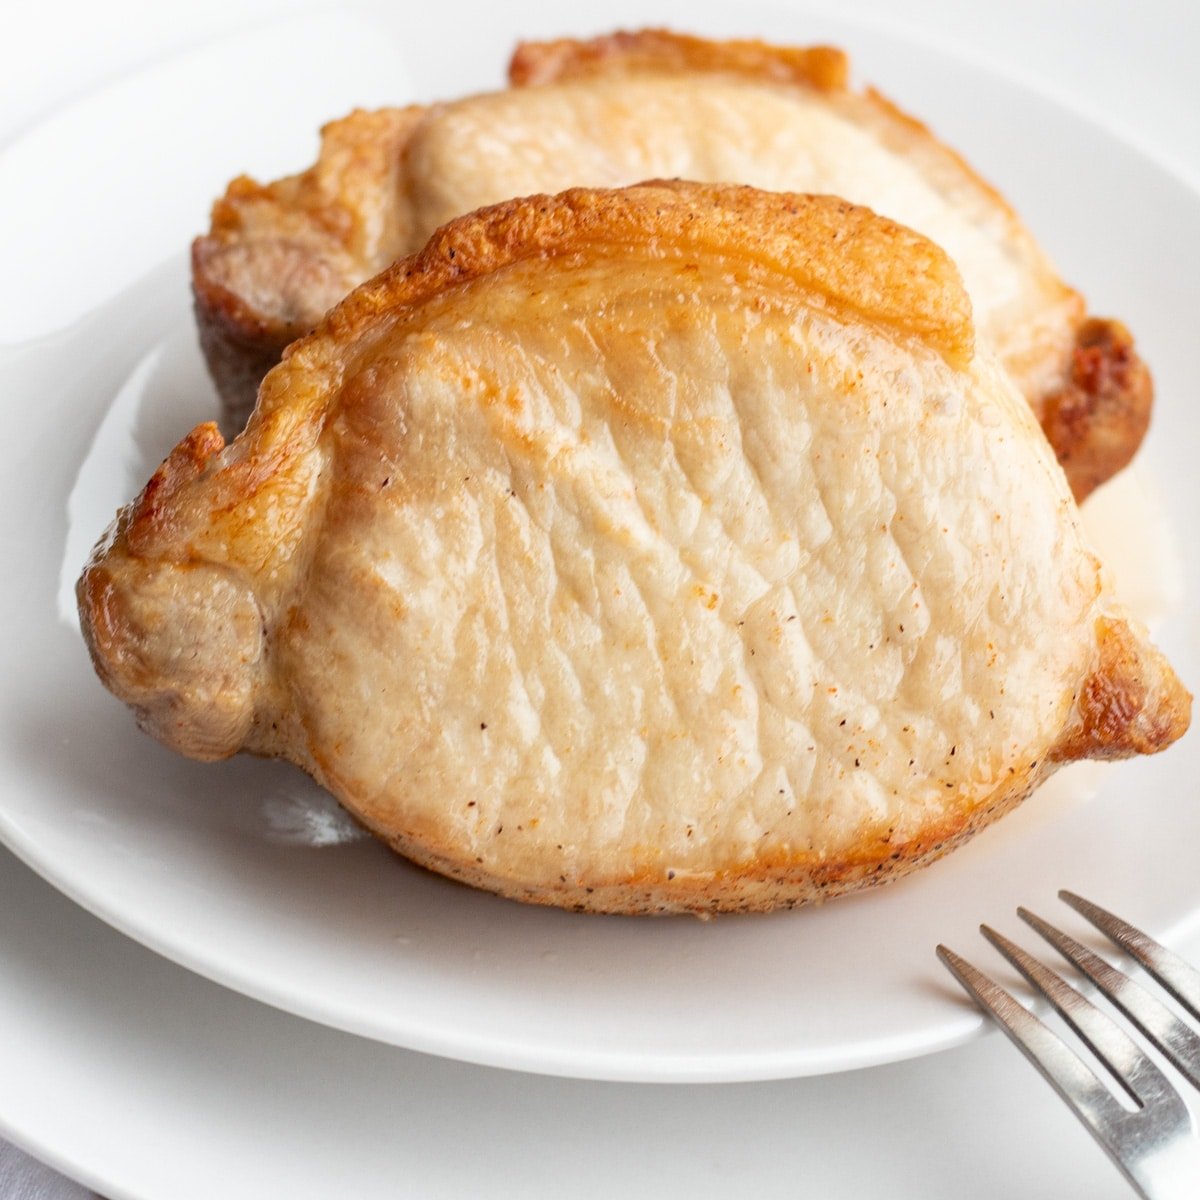 Najbolji svinjski kotleti za prženje na zraku posluženi na bijelom tanjuru.